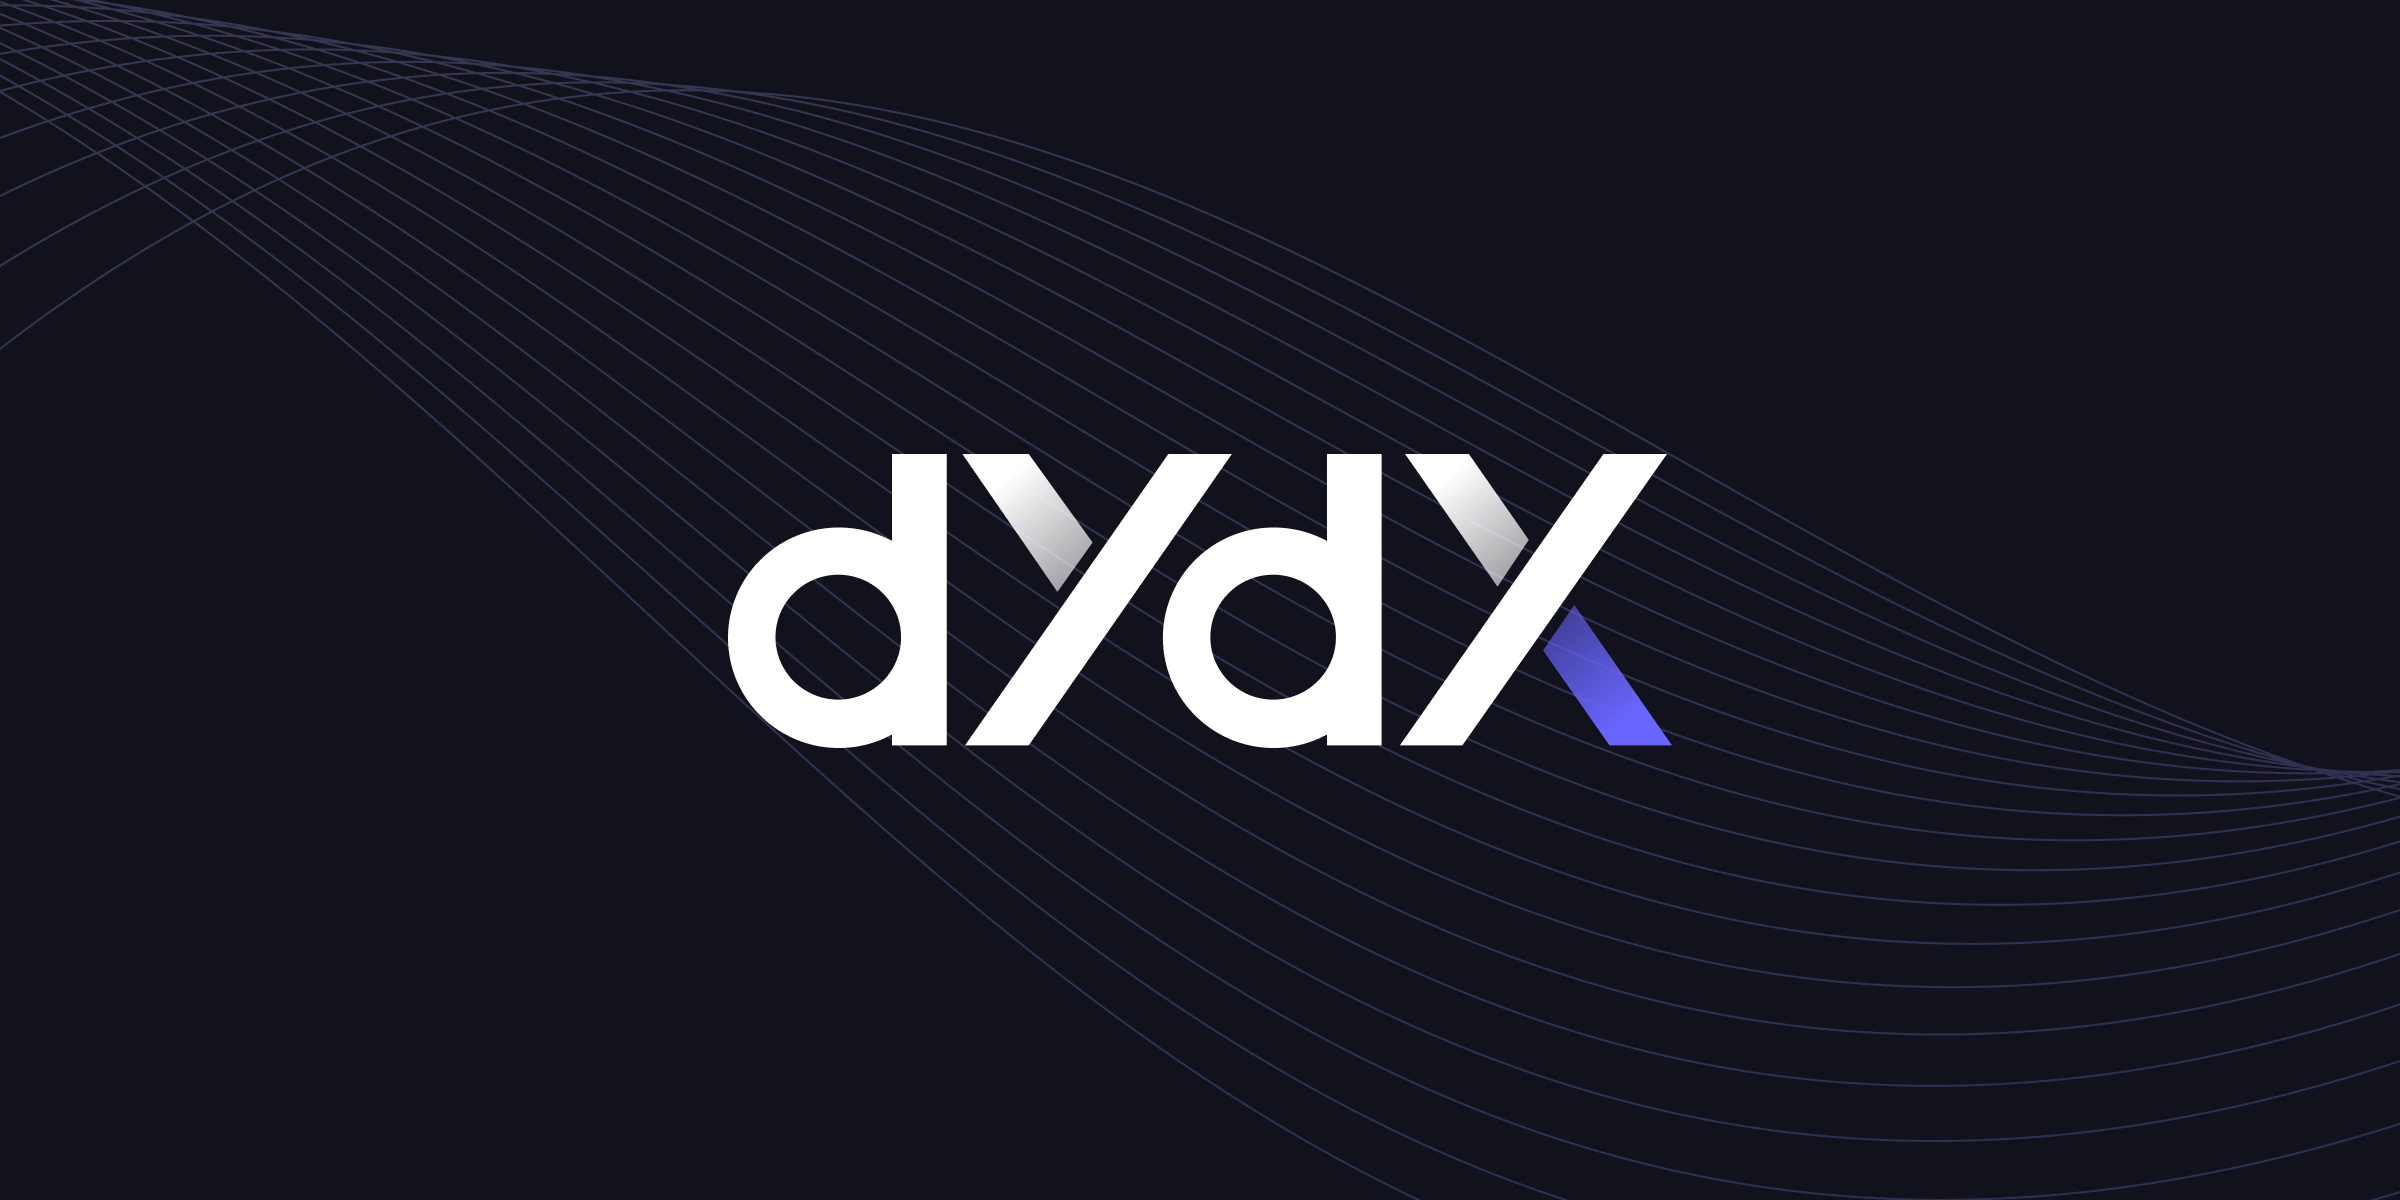 پروتکل dYdX حساب کاربران را به دلیل استفاده از تورنادو کش مسدود کرد